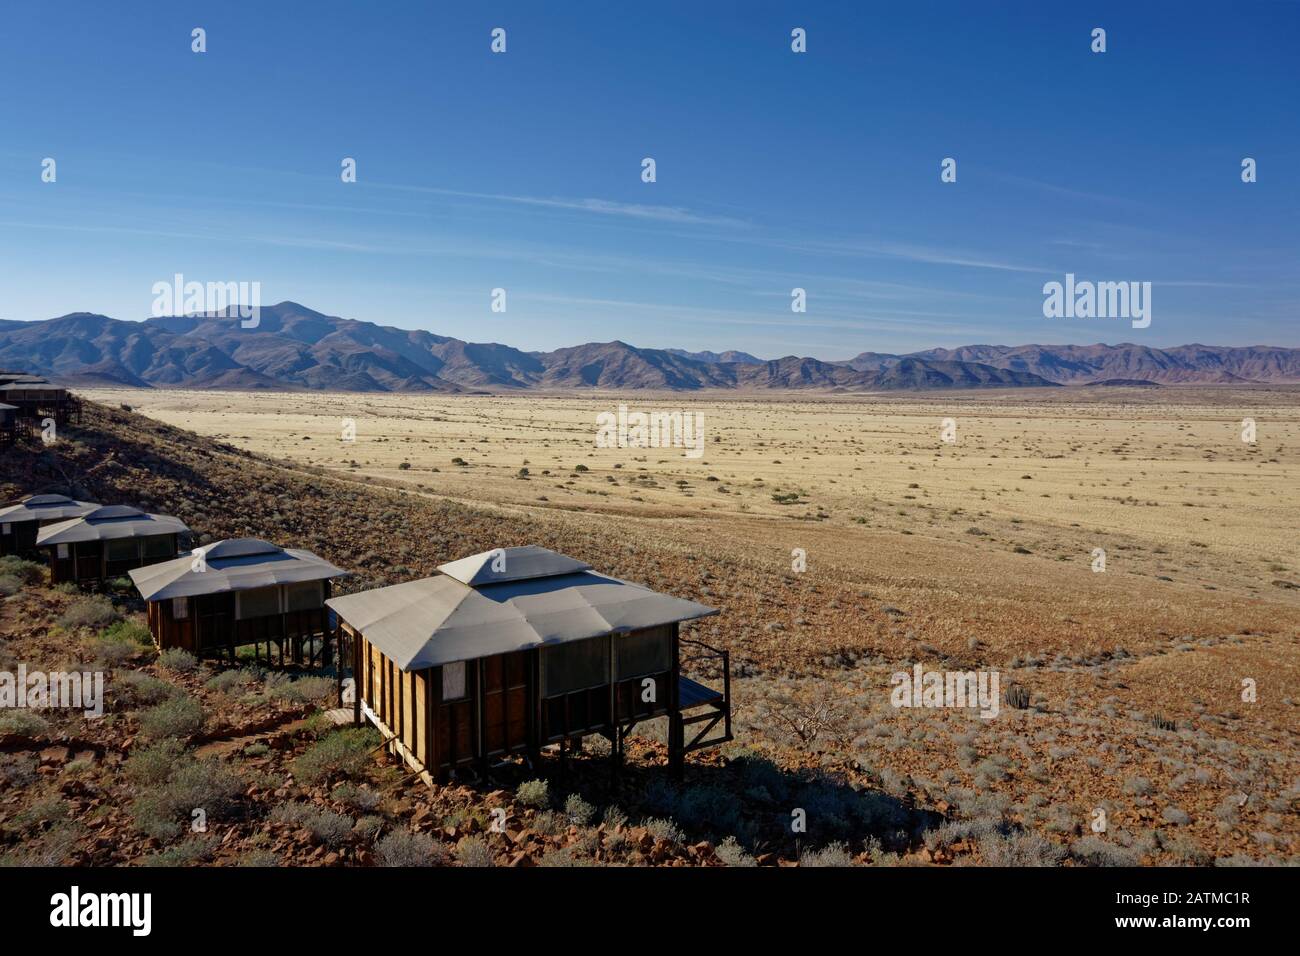 Un paesaggio marziano, tipico alloggio turistico su palafitte nel deserto, Namibia, Africa. Foto Stock